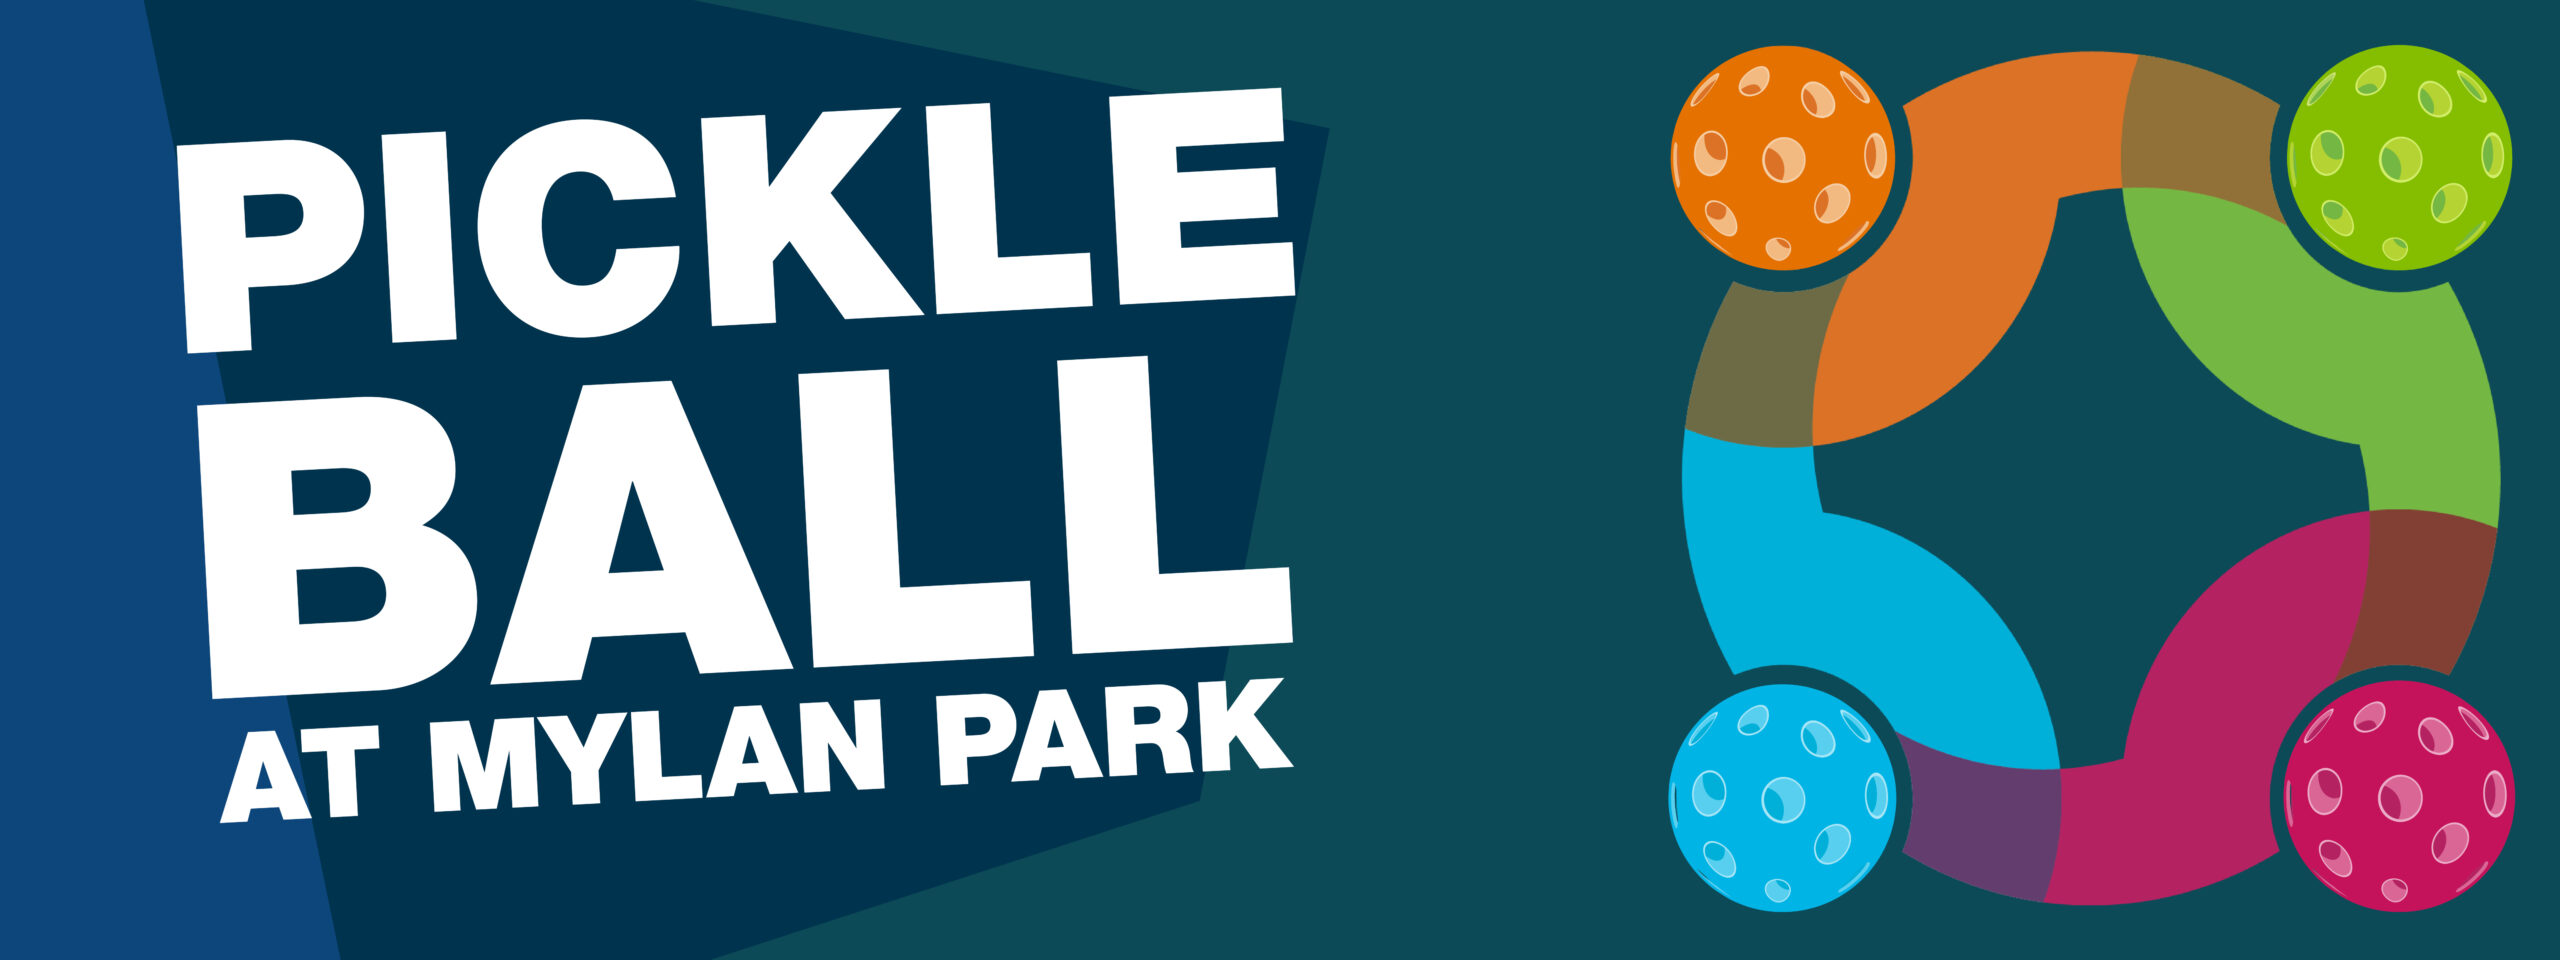 Pickleball at Mylan Park